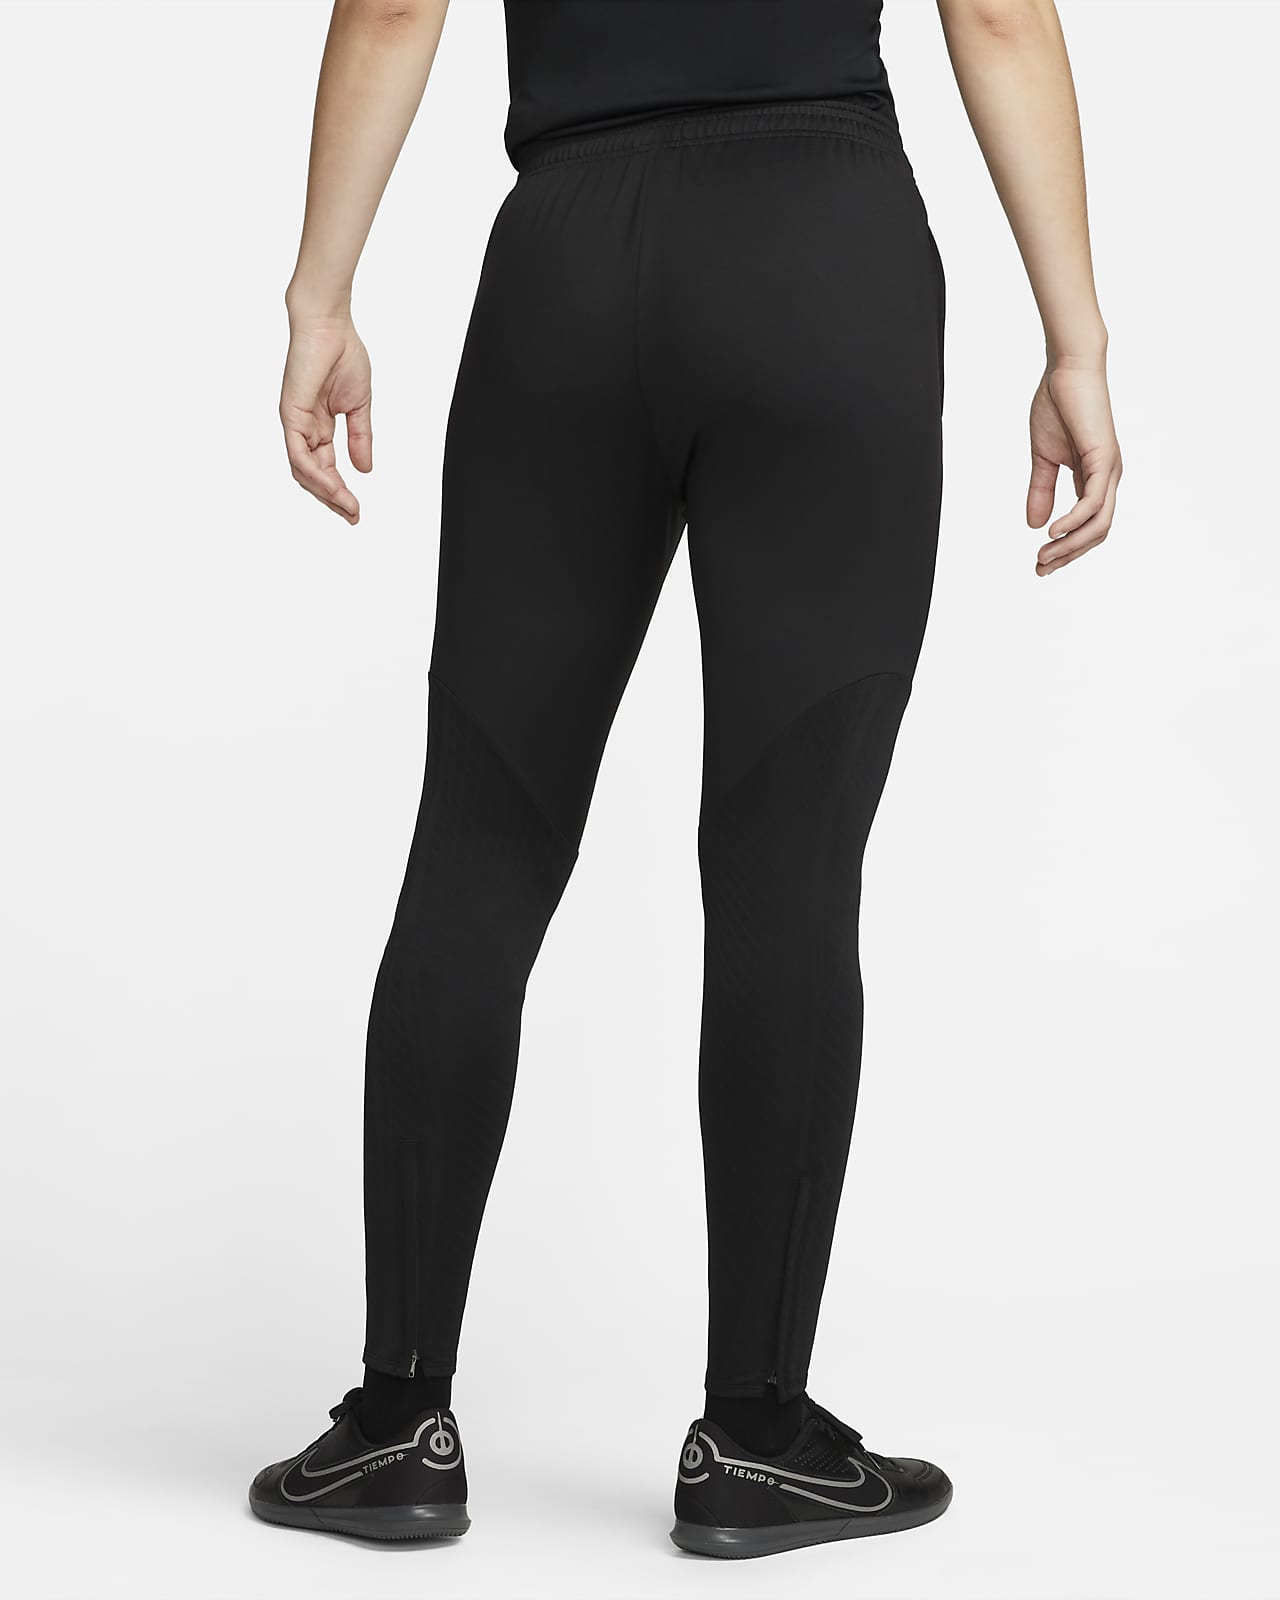 Nike Dri-FIT Strike Women's Soccer Pants - Black / Yellow